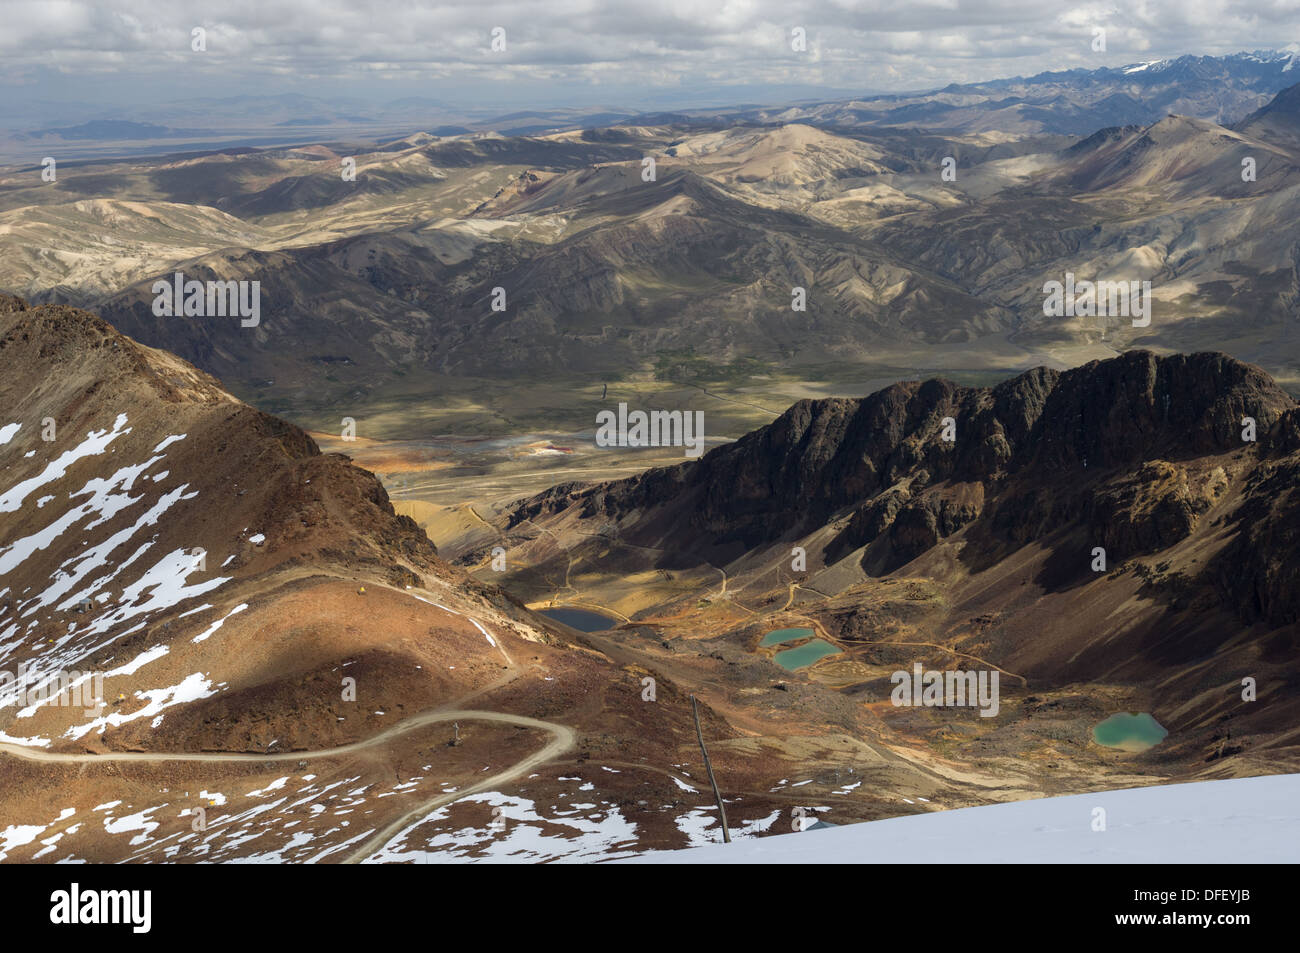 Guardando verso il basso sulla valle circostante, i laghi e le montagne della Cordillera Real, dal 5421 metri (17,785 ft) summit di Chacaltaya stazione, vicino a La Paz in Bolivia Foto Stock